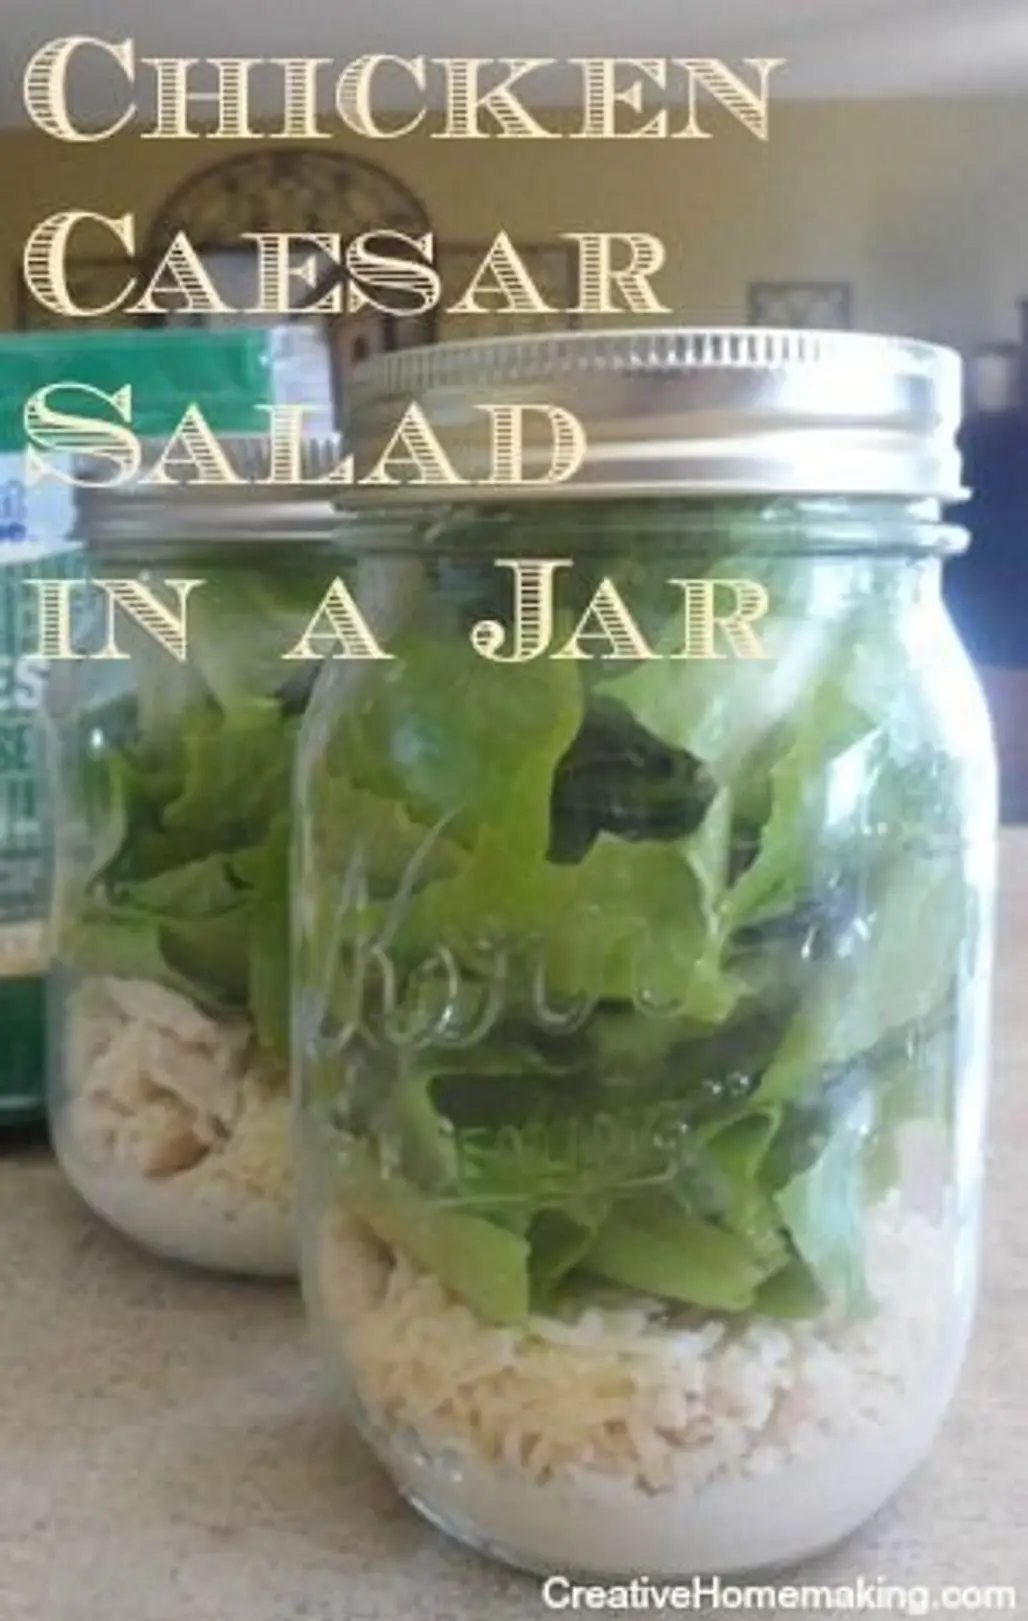 Homemade Chicken Caesar Salad in a Jar